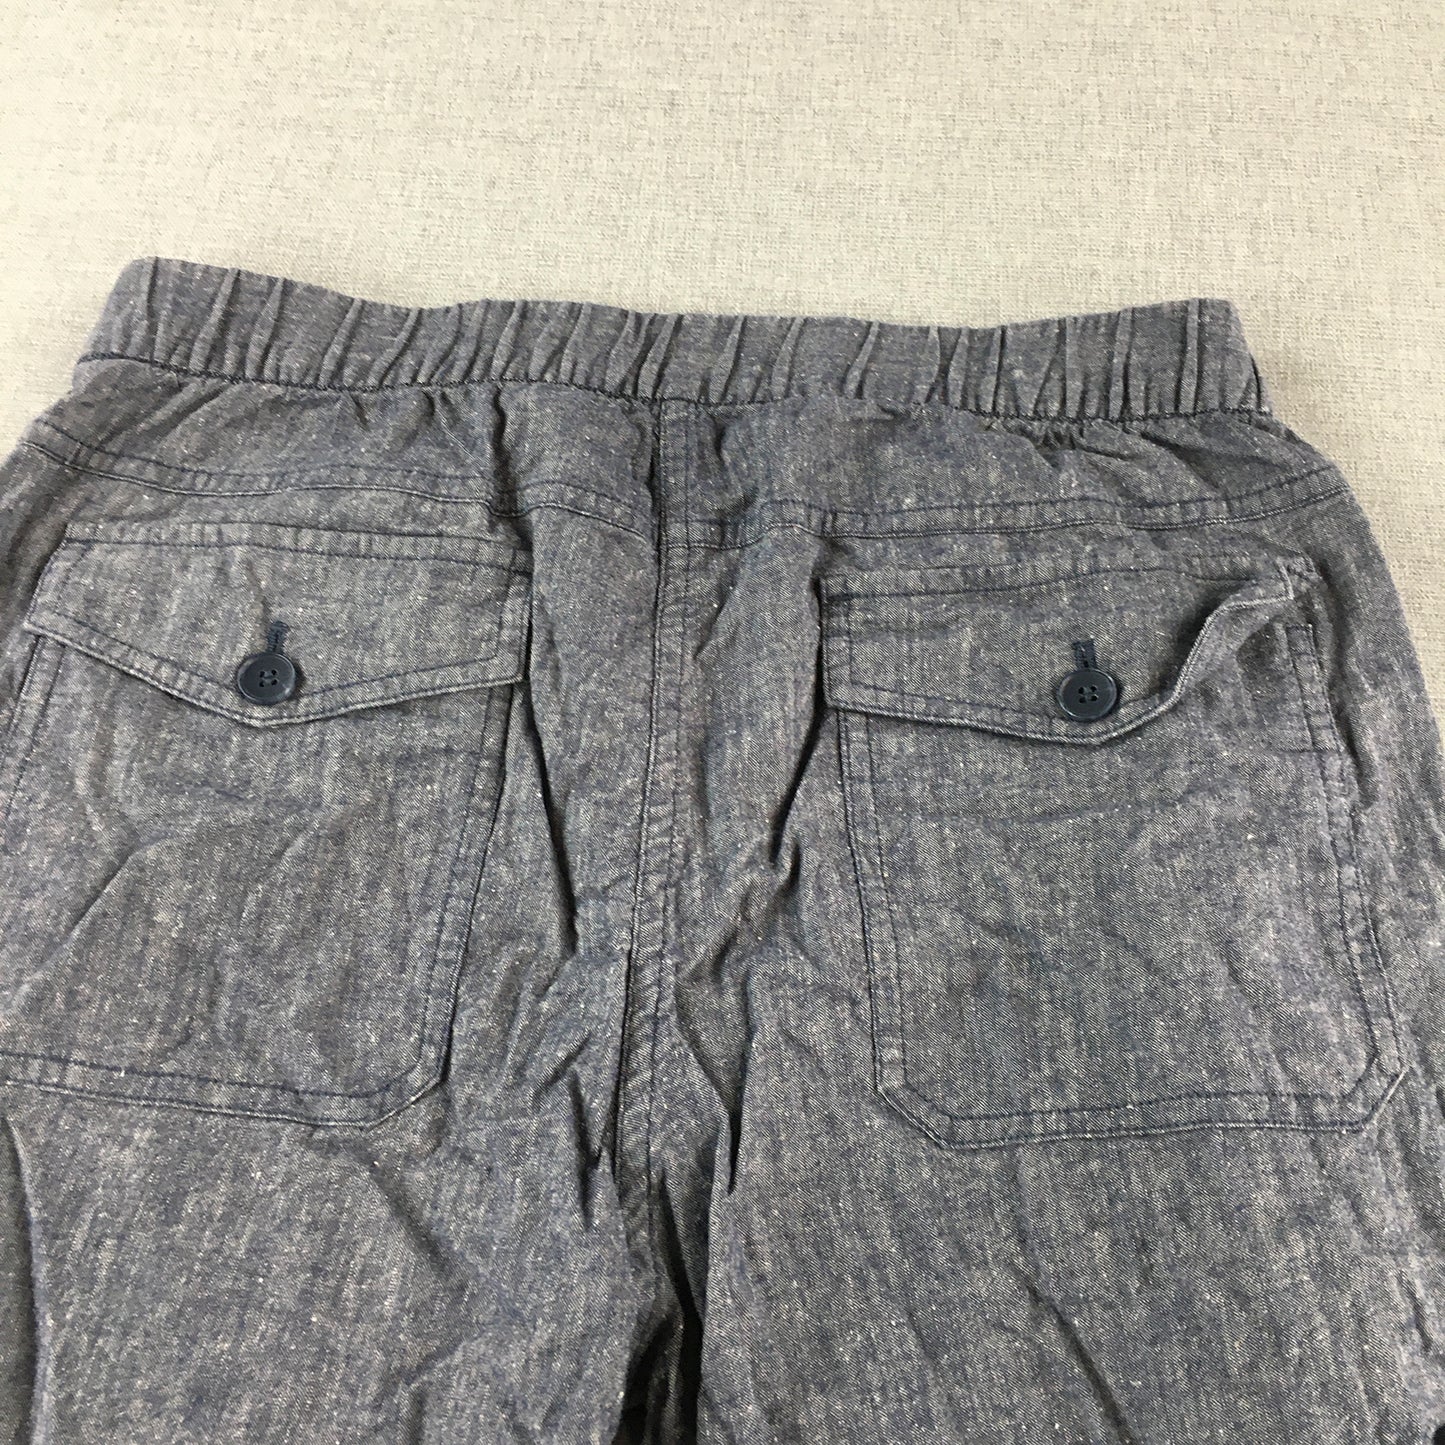 Sportscraft Womens Linen Pants Size 8 Blue Elastic Waist Pockets